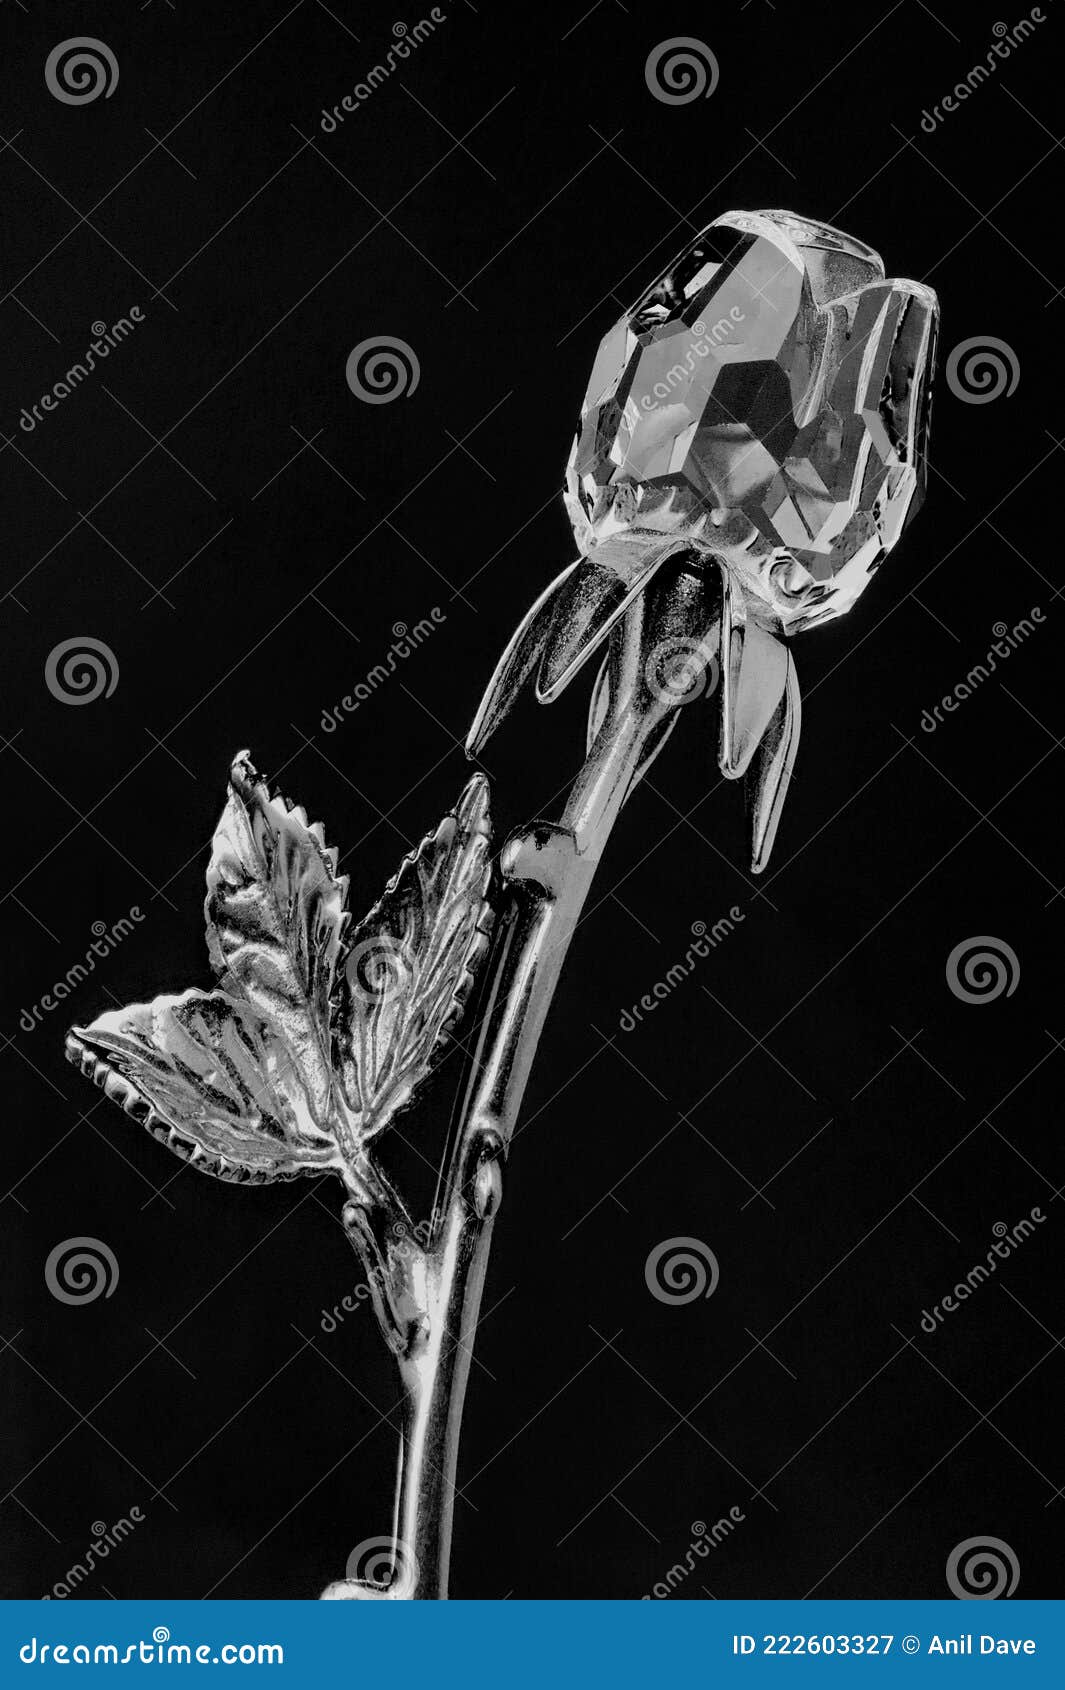 crystal glass rose flower 24k gold plated long stem on black background